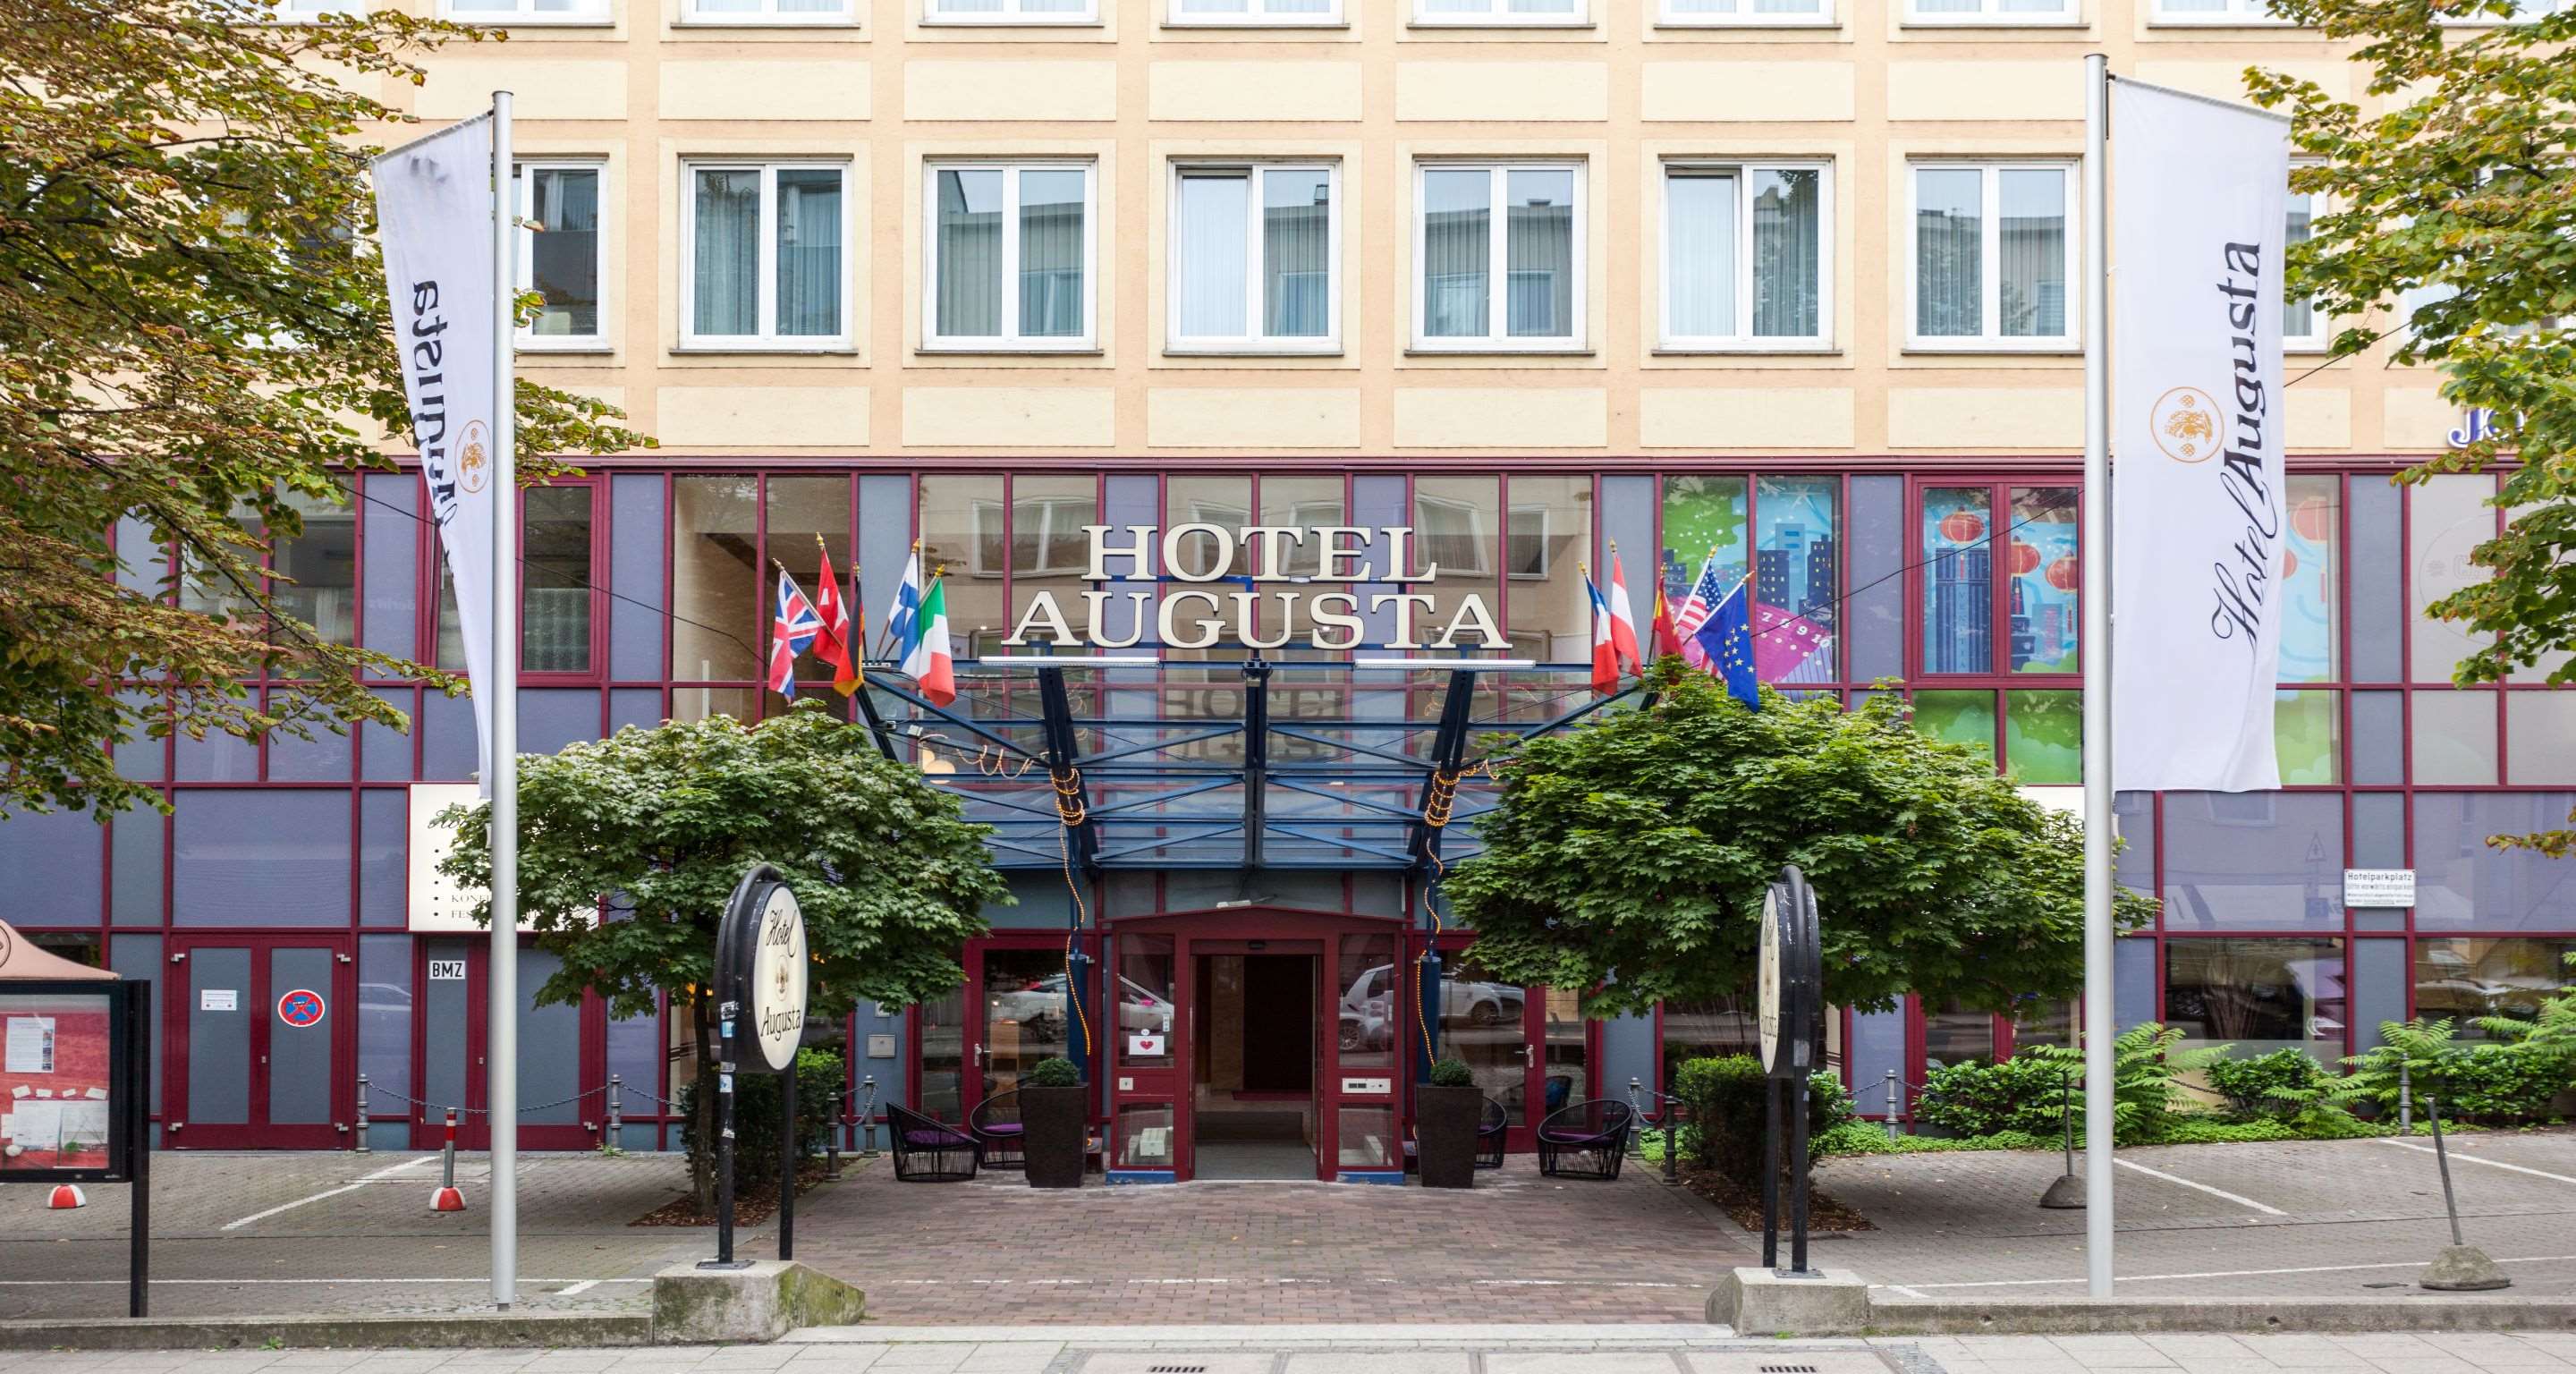 Fotos - Best Western Hotel Augusta - 84